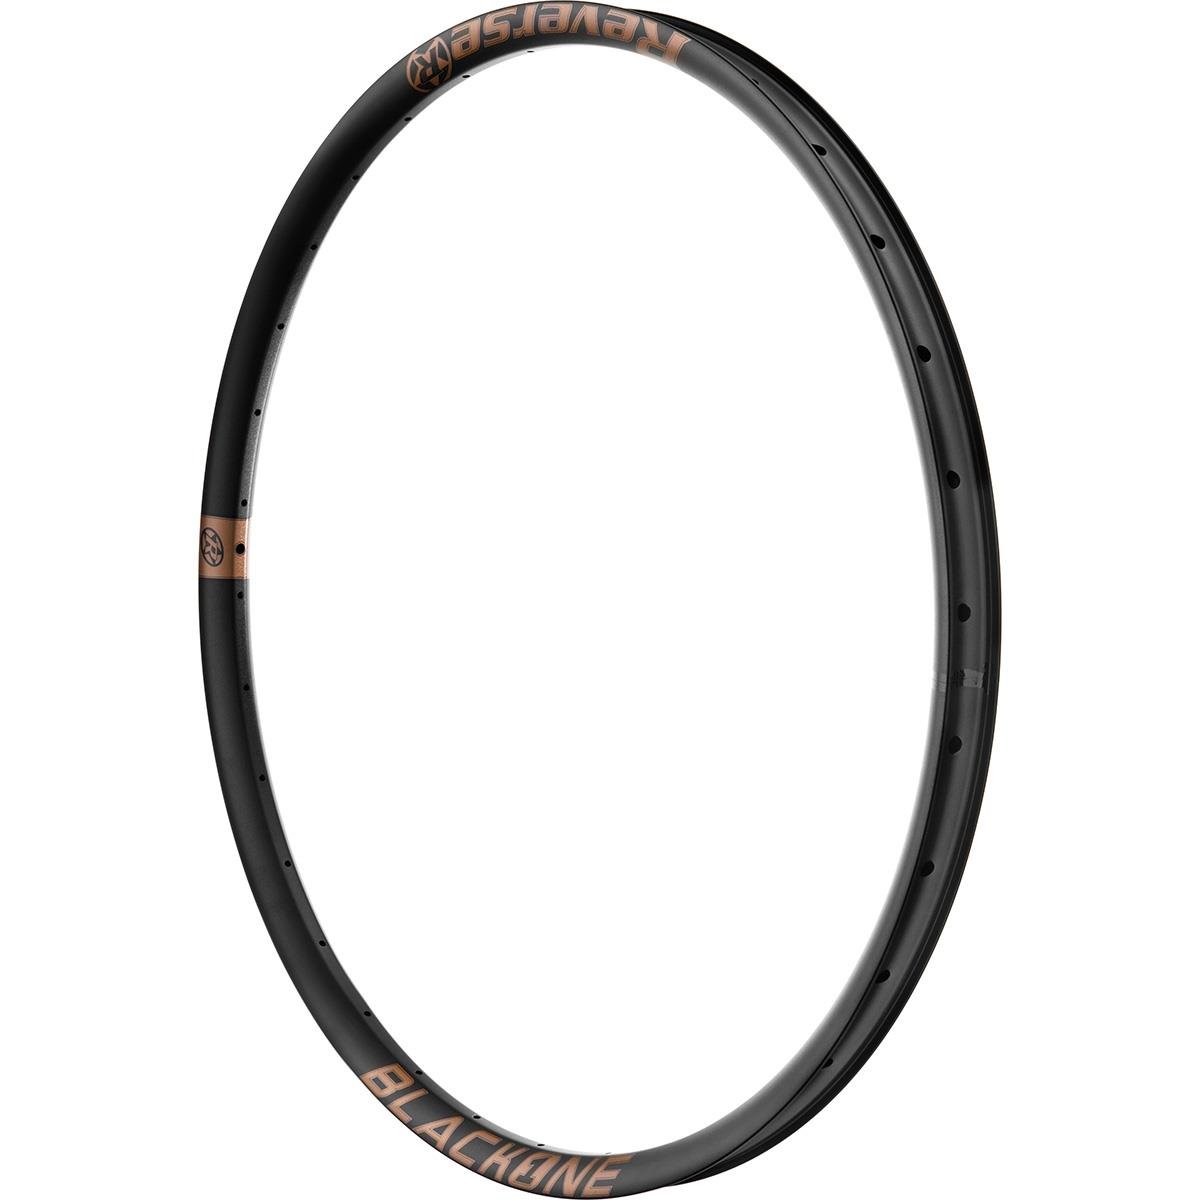 Reverse Components Cerchio MTB Black One Nero/Rame, 27.5 Pollici x 30 mm, Alluminio